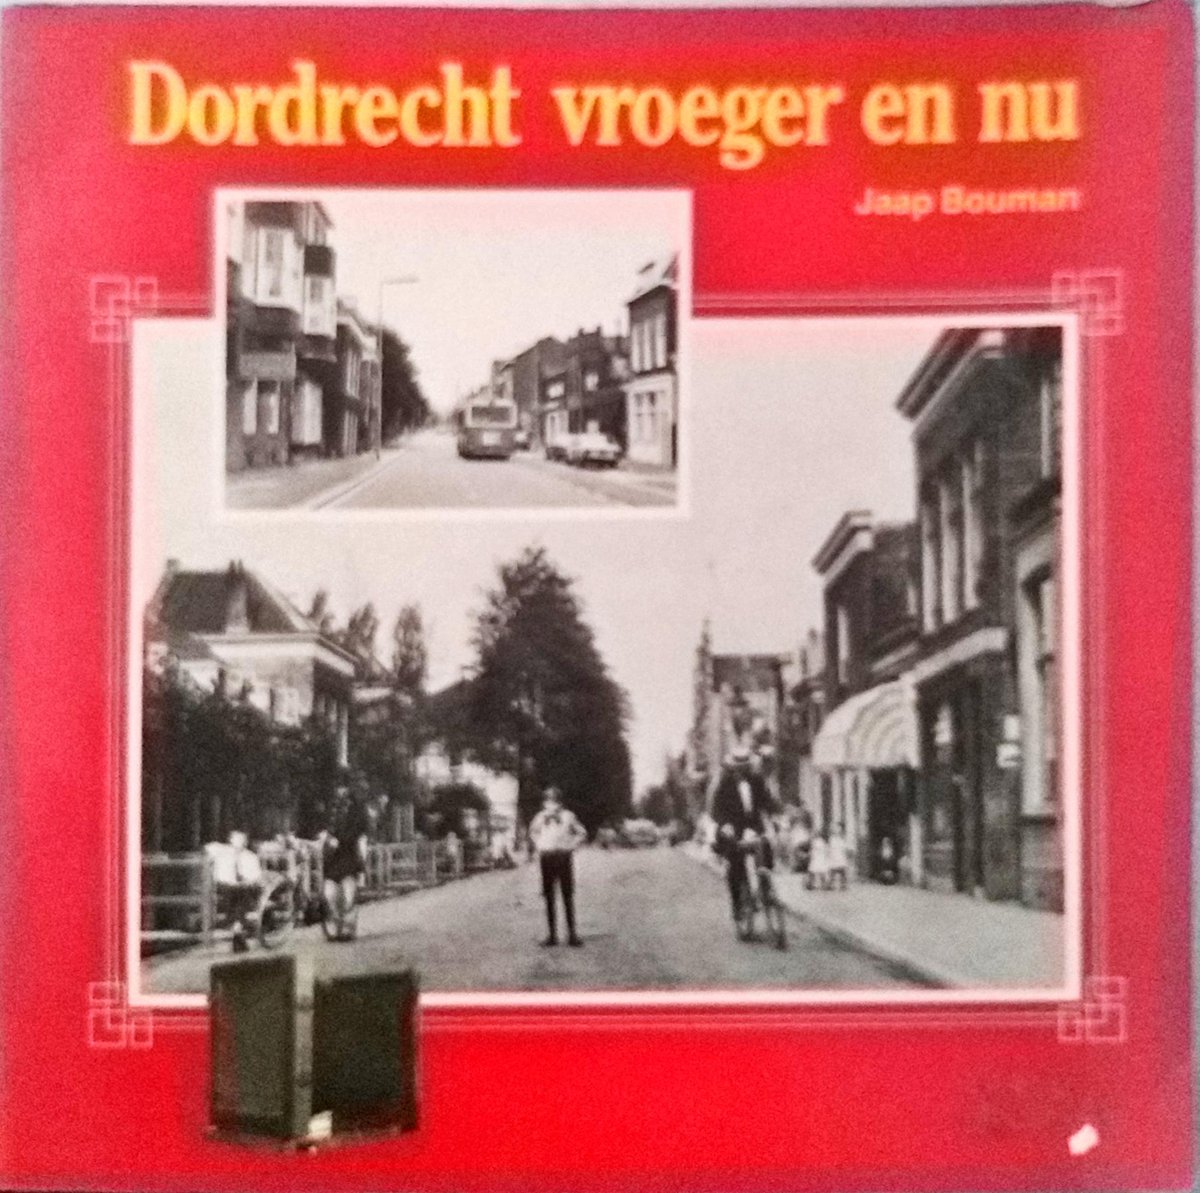 Dordrecht vroeger en nu - Ina Bouman